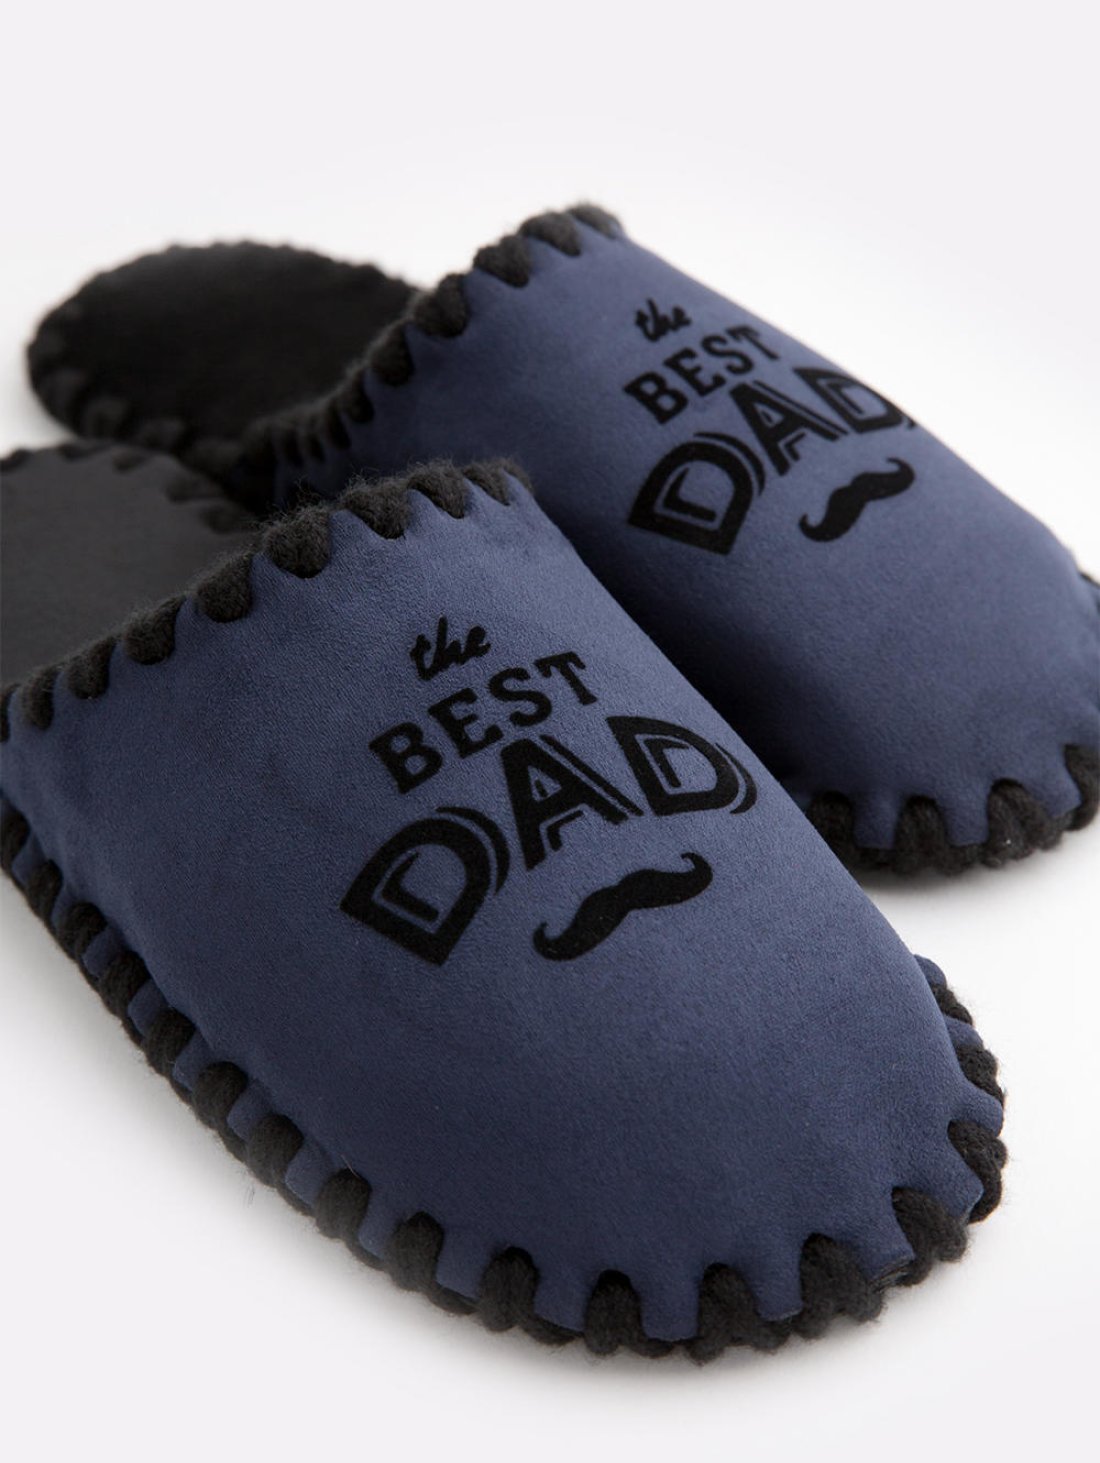 Закрытые мужские тапочки для дома с надписью Best Dad синего цвета. Family Story Фото -3